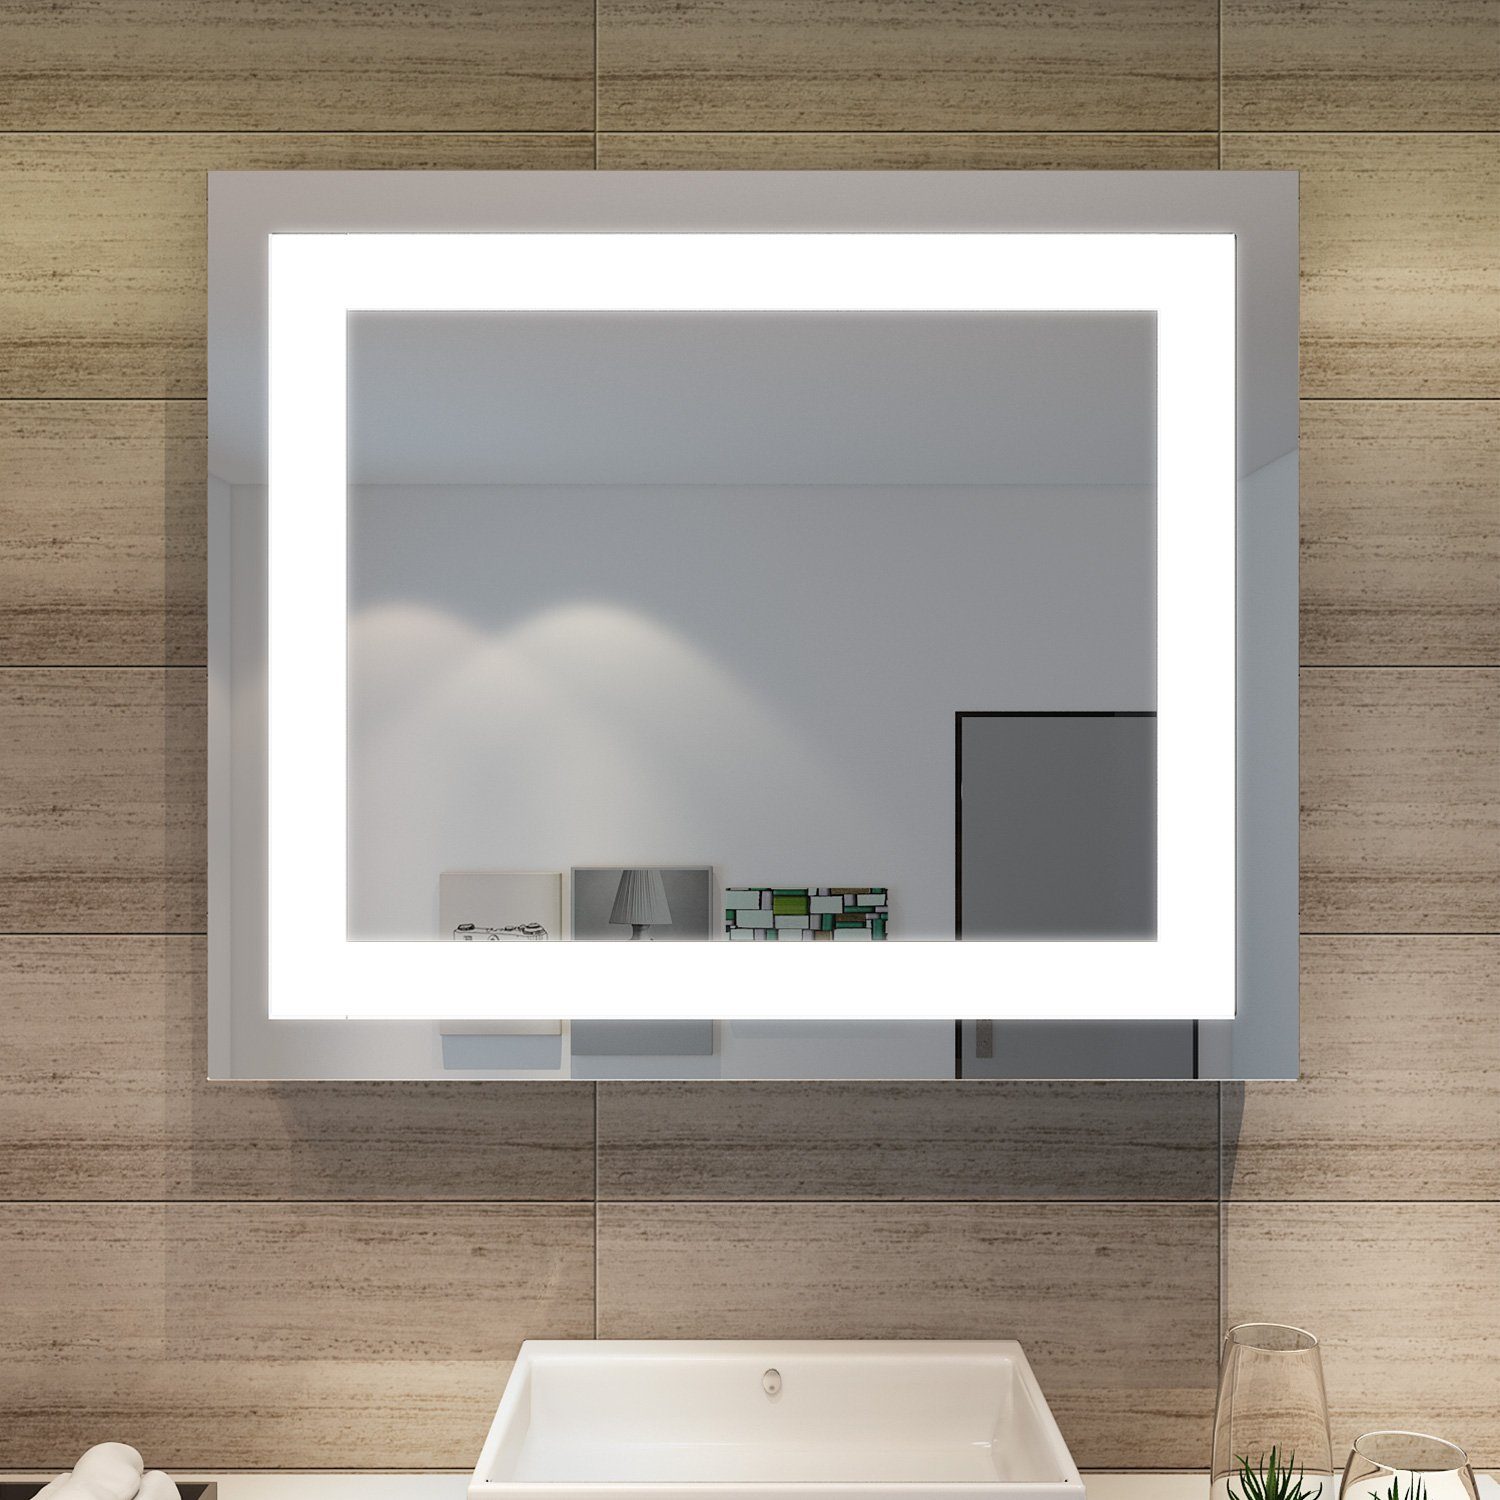 SONNI Schminkspiegel Badspiegel mit LED Beleuchtung 60 cm Wandspiegel kaltweiß IP44, energiesparend, Lichtspiegel, Badezimmerspiegel, Schminkspiegel